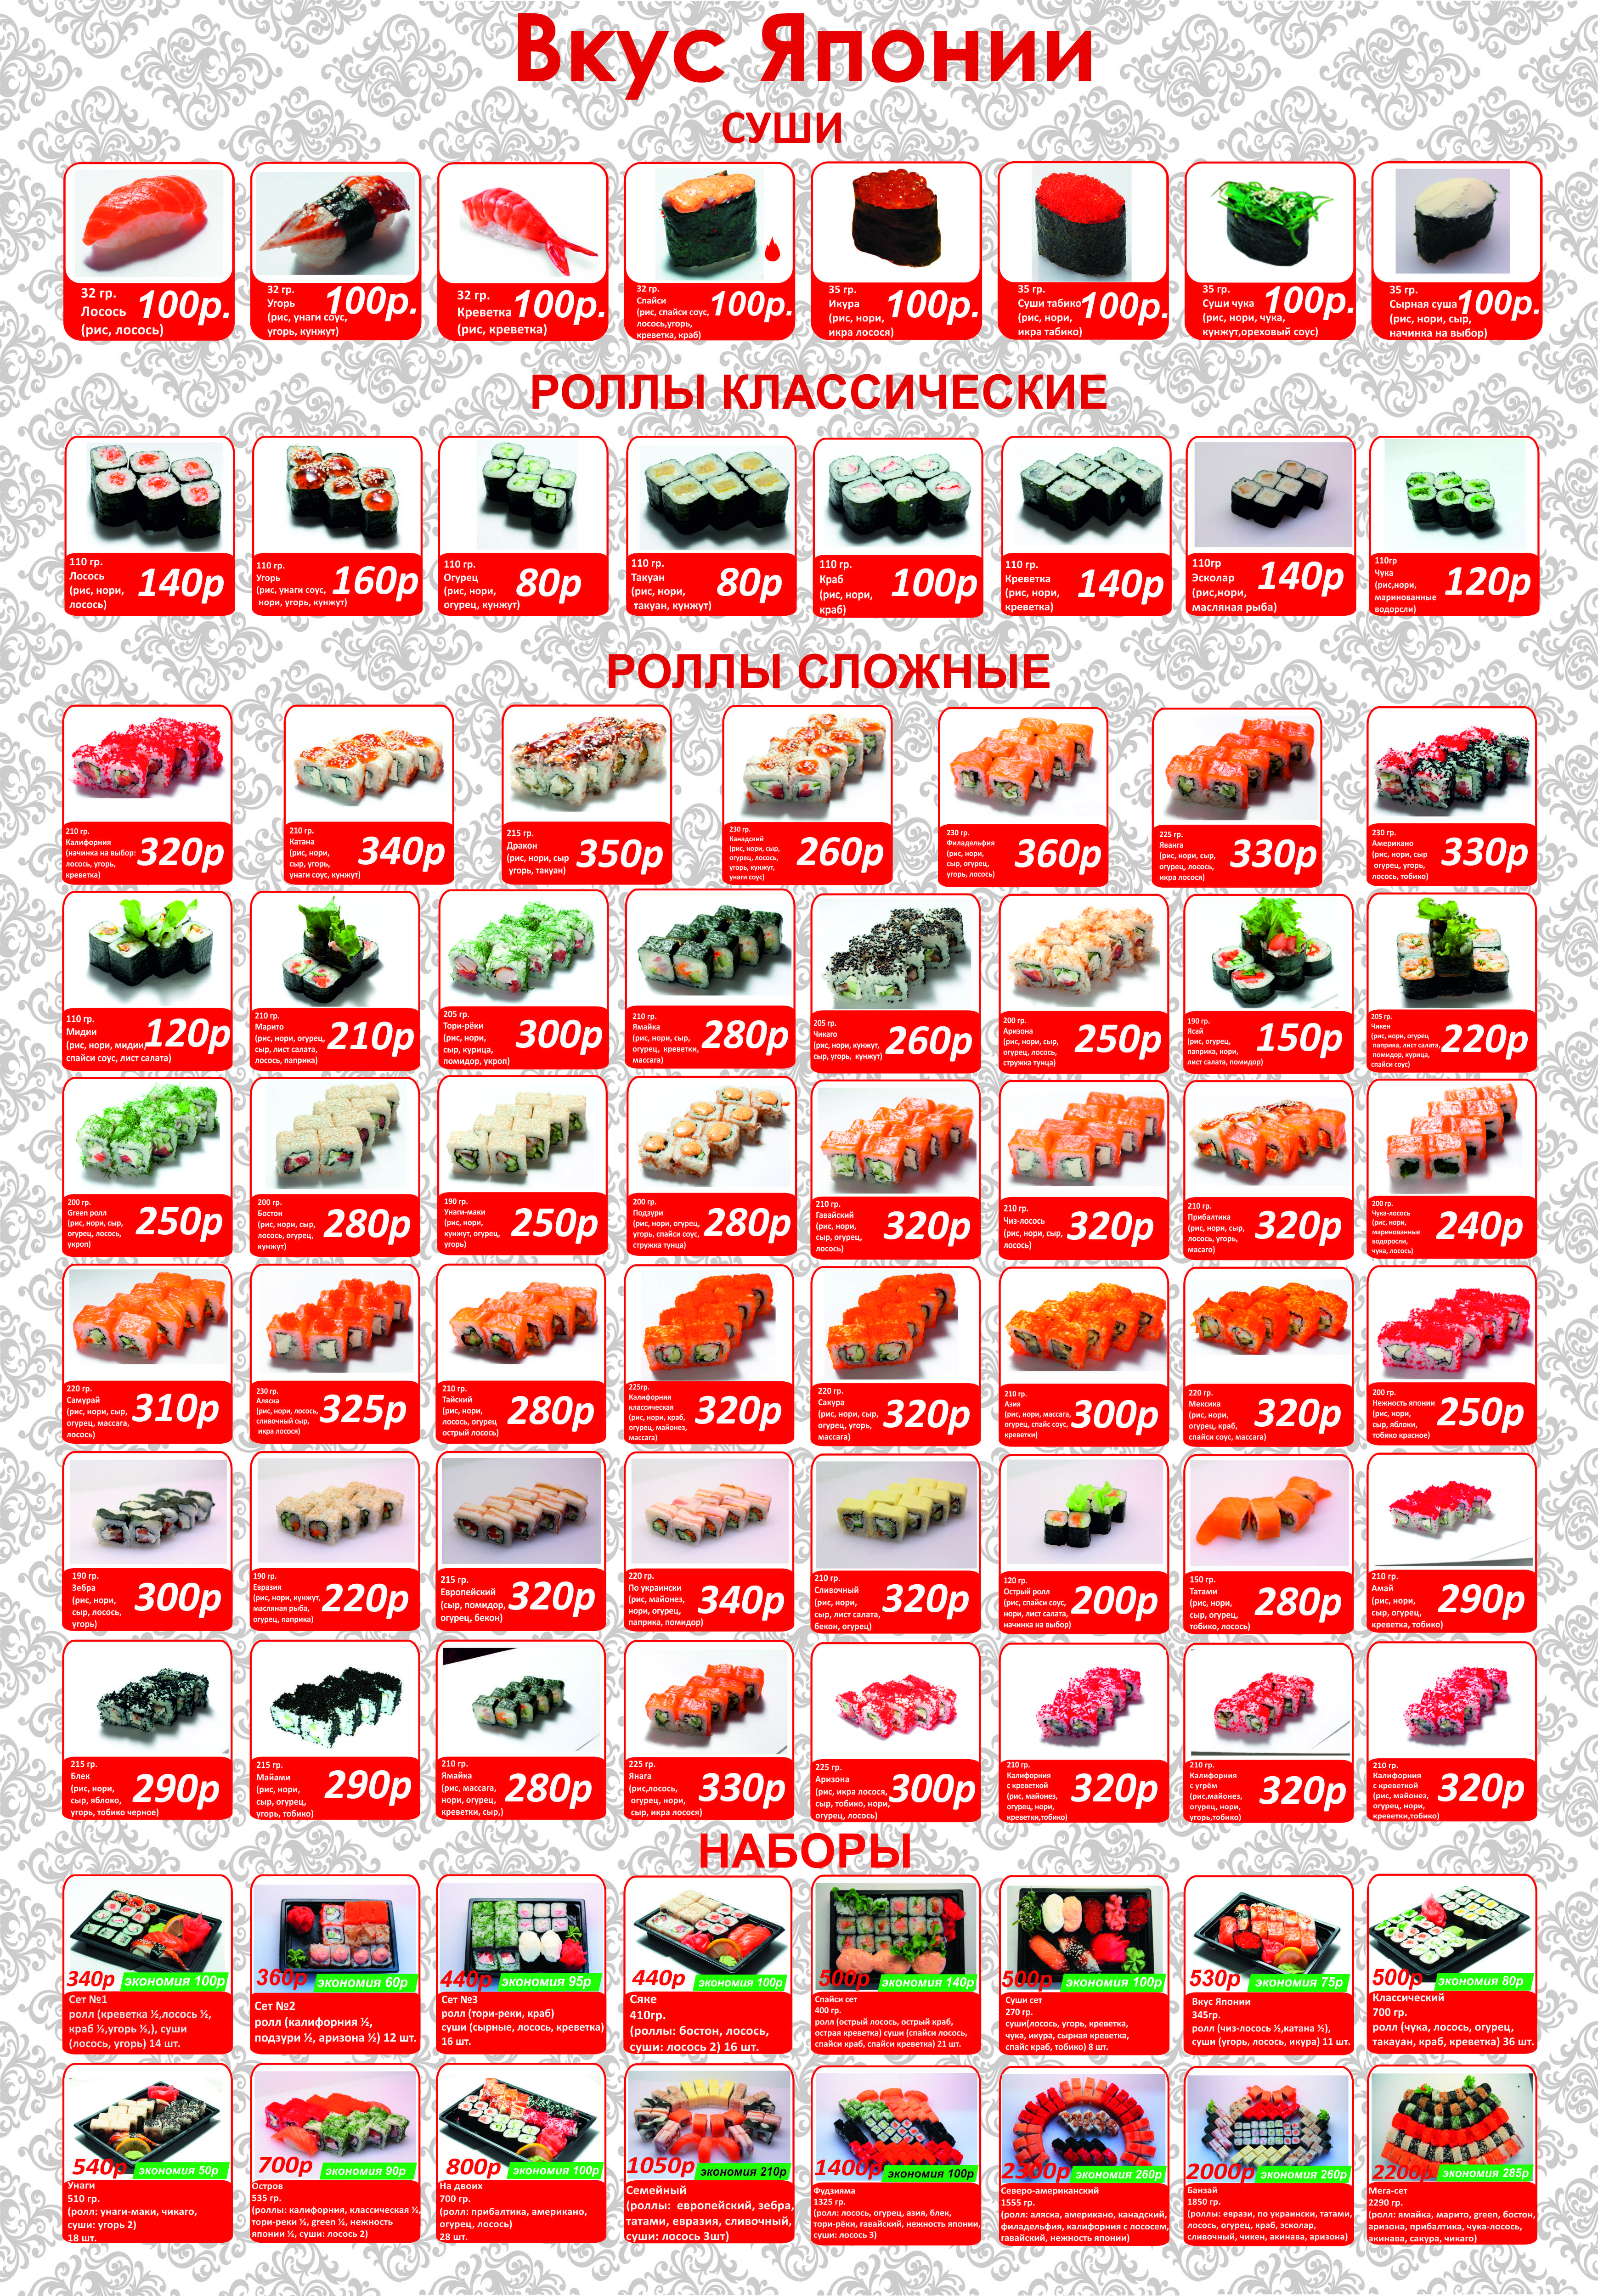 Суши вкусы и виды (120) фото